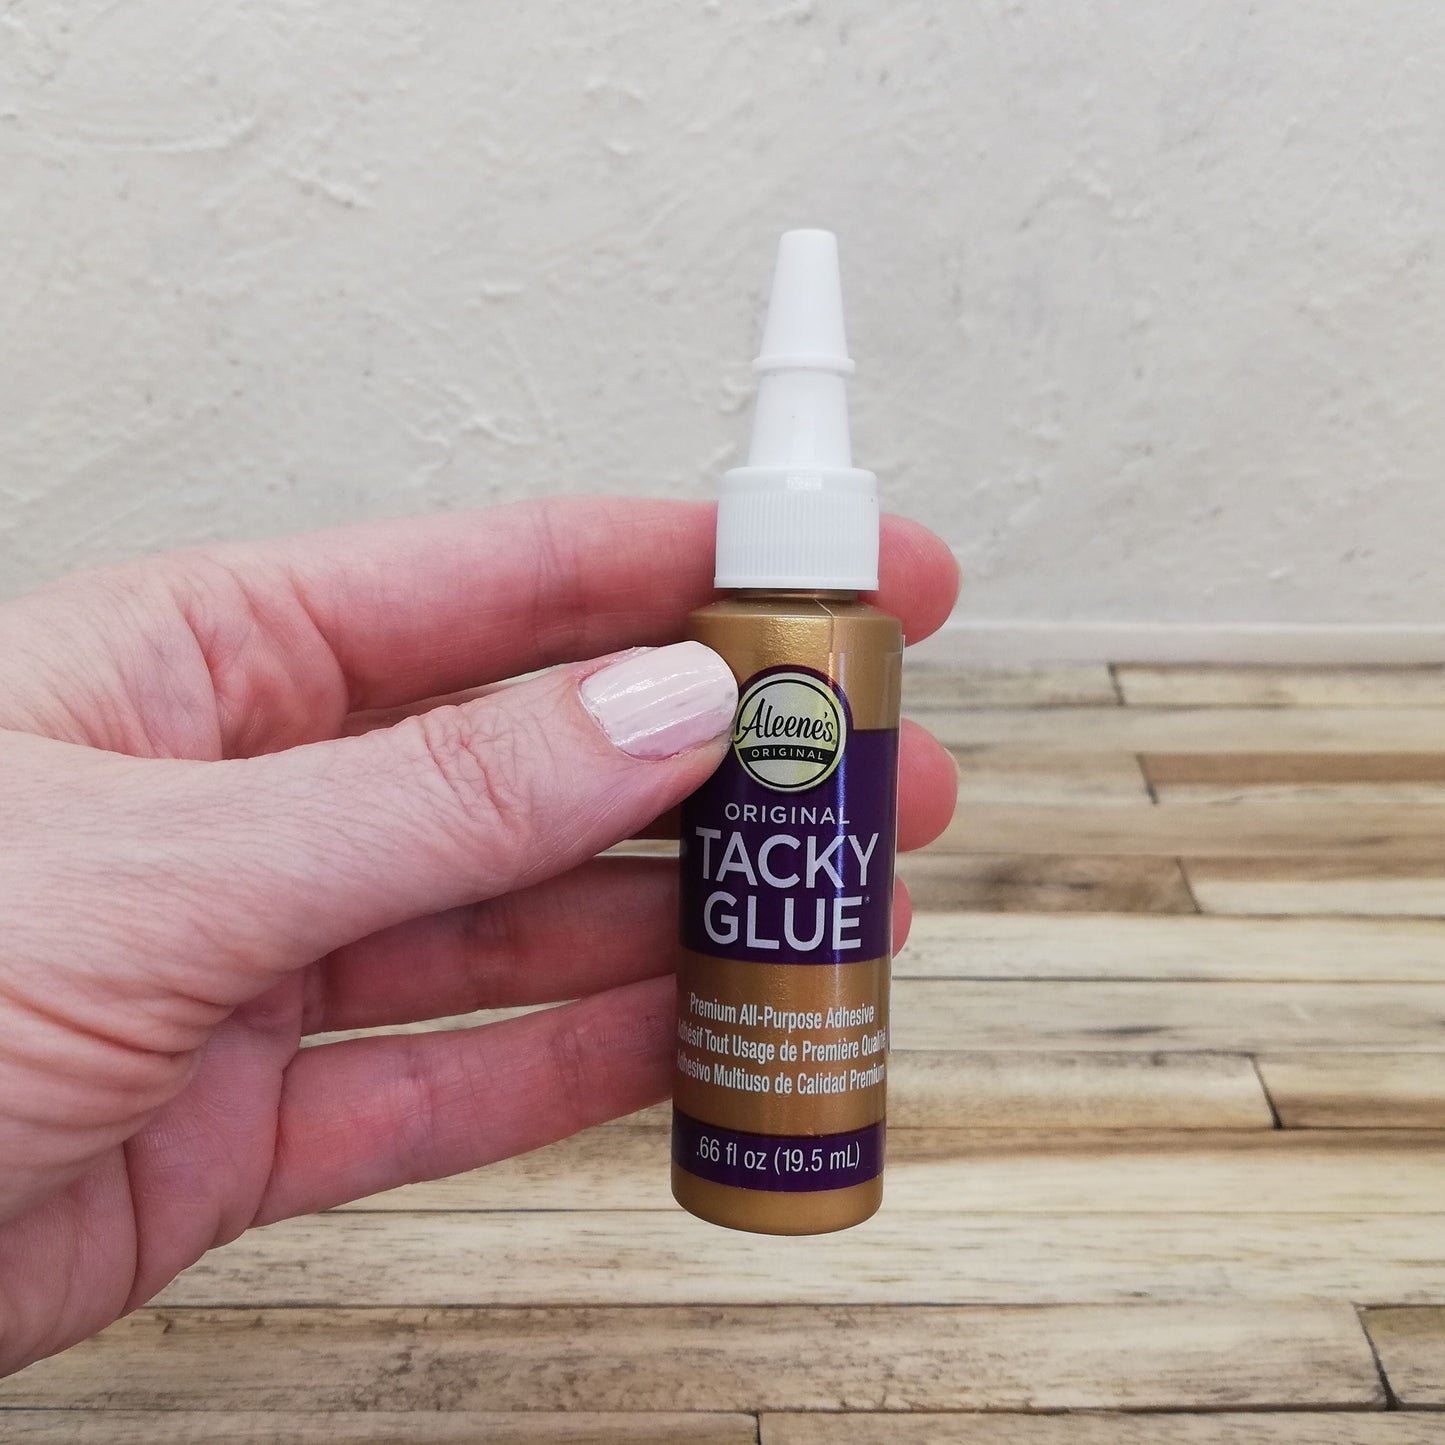 Aleene's Original Tacky Glue 19,5ml